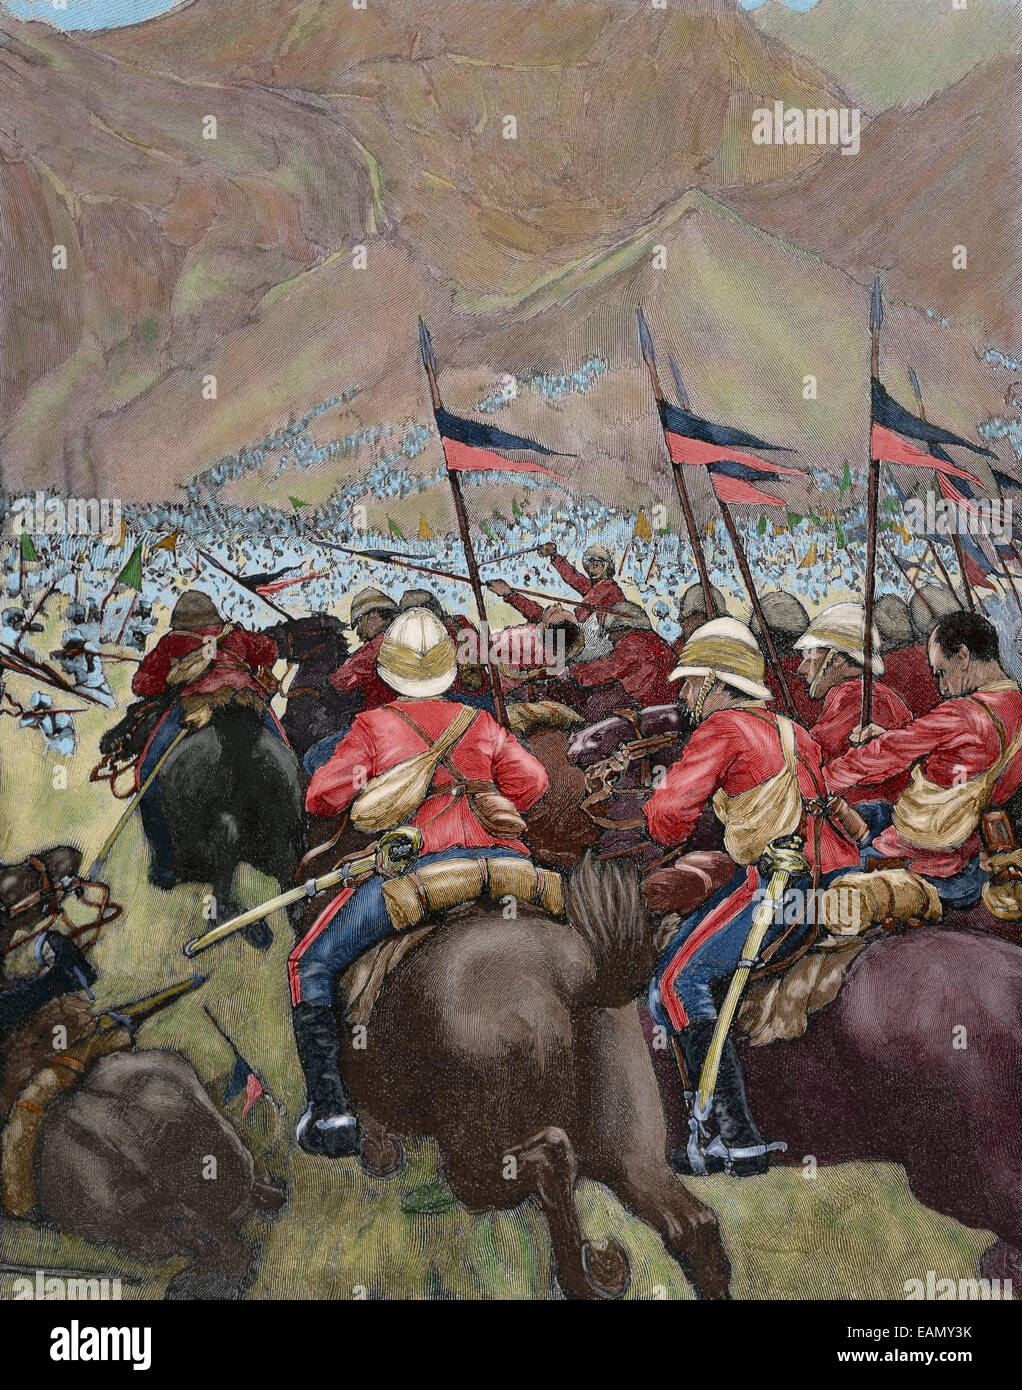 L'Afrique. Le colonialisme. La charge de la cavalerie anglaise. Dans la Péninsule Ibérique gravure Illustration, 1898. De couleur. Banque D'Images